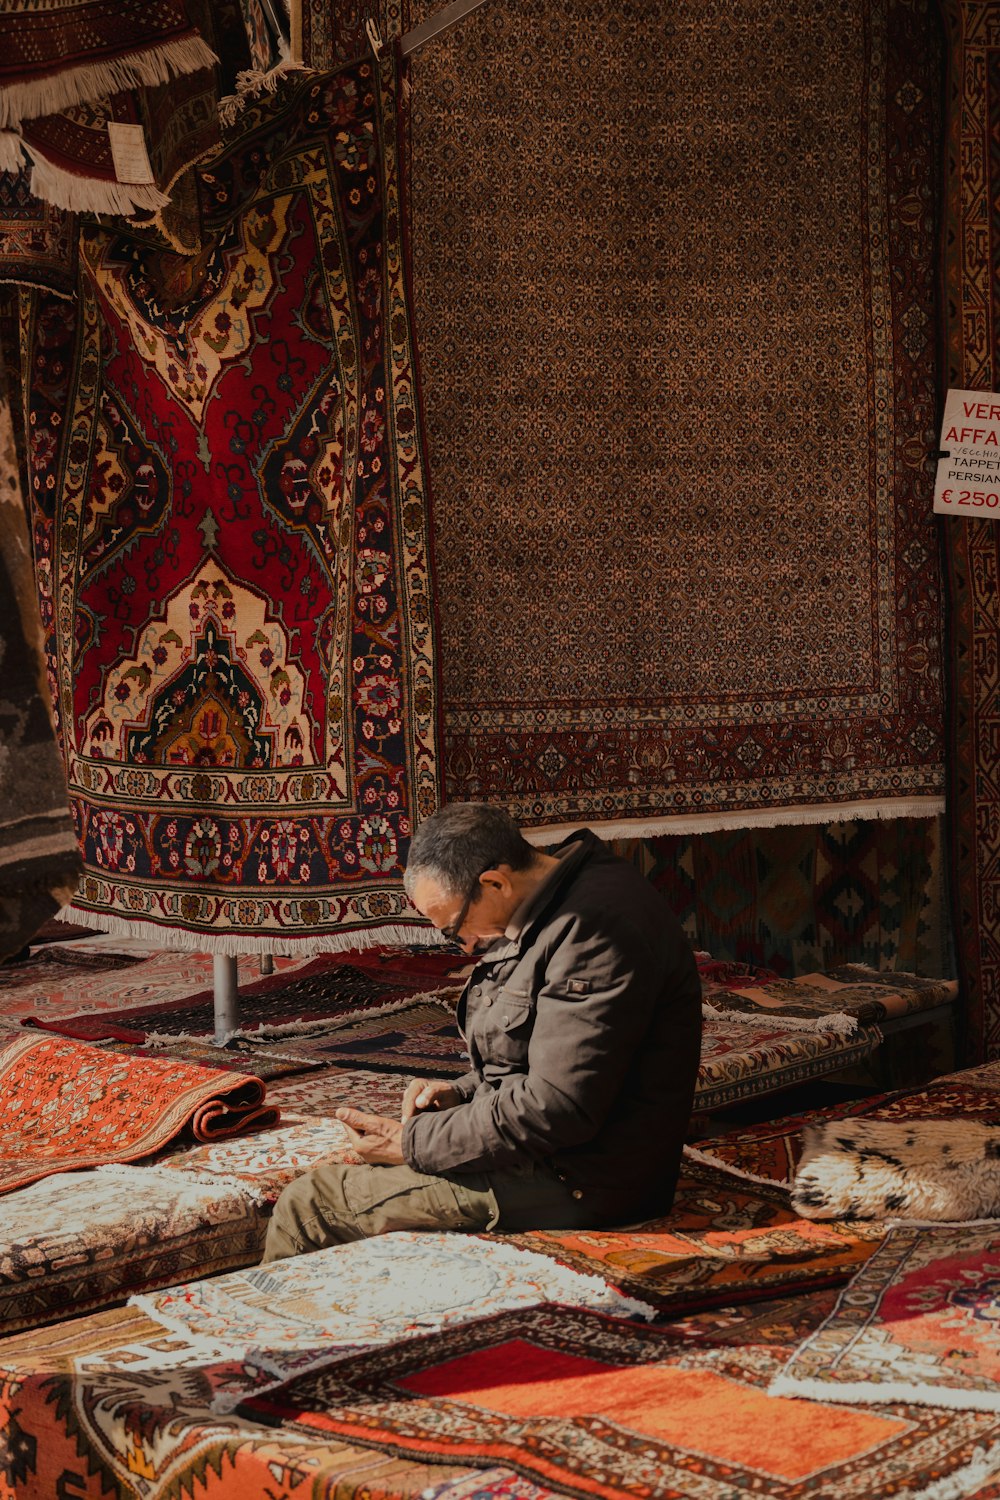 Un hombre sentado en el suelo junto a una pila de alfombras